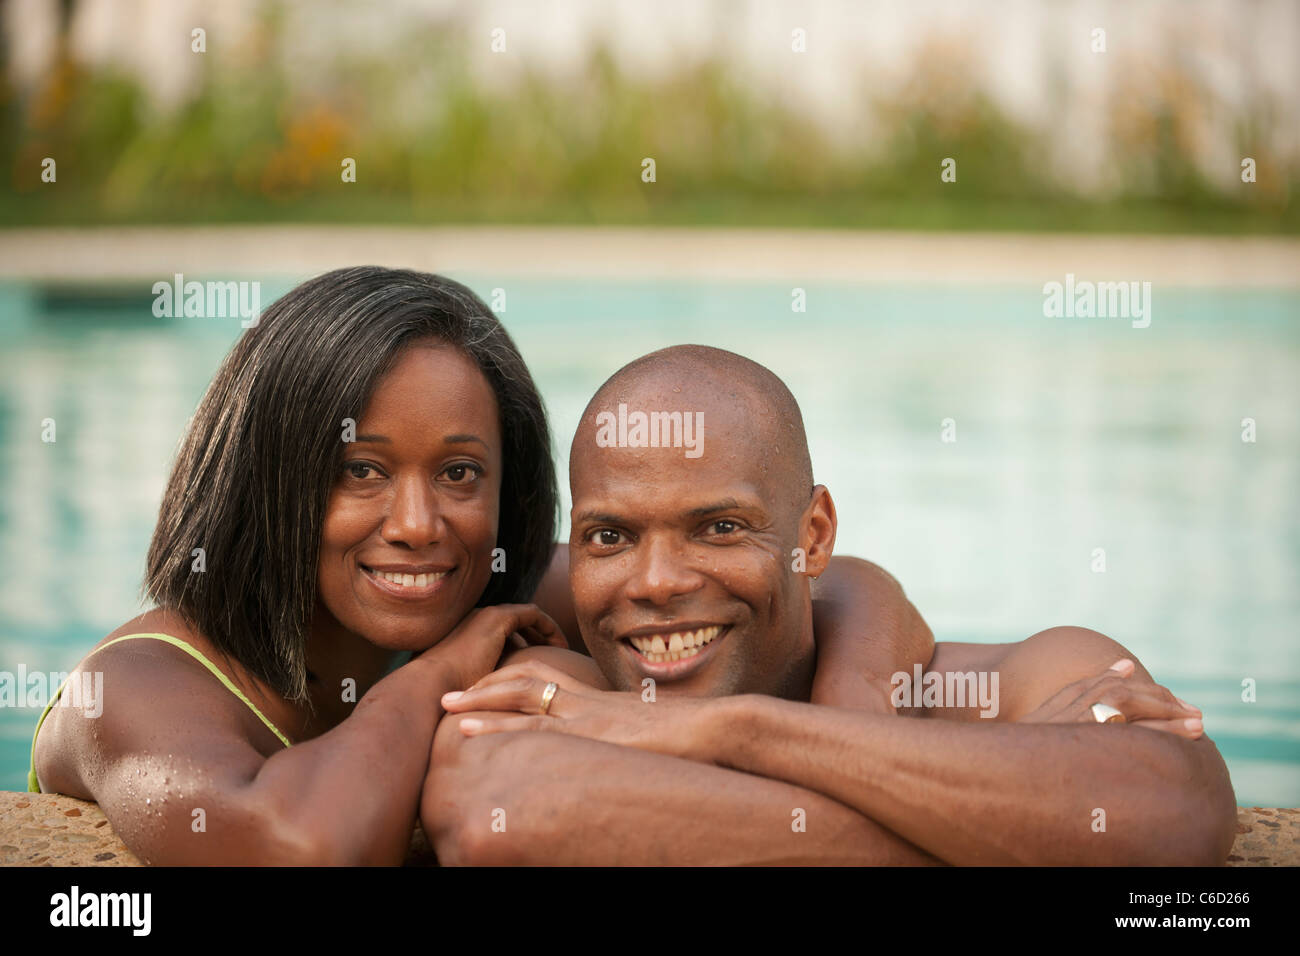 Afrikanische amerikanische paar stützte sich auf den Rand des Schwimmbad Stockfoto